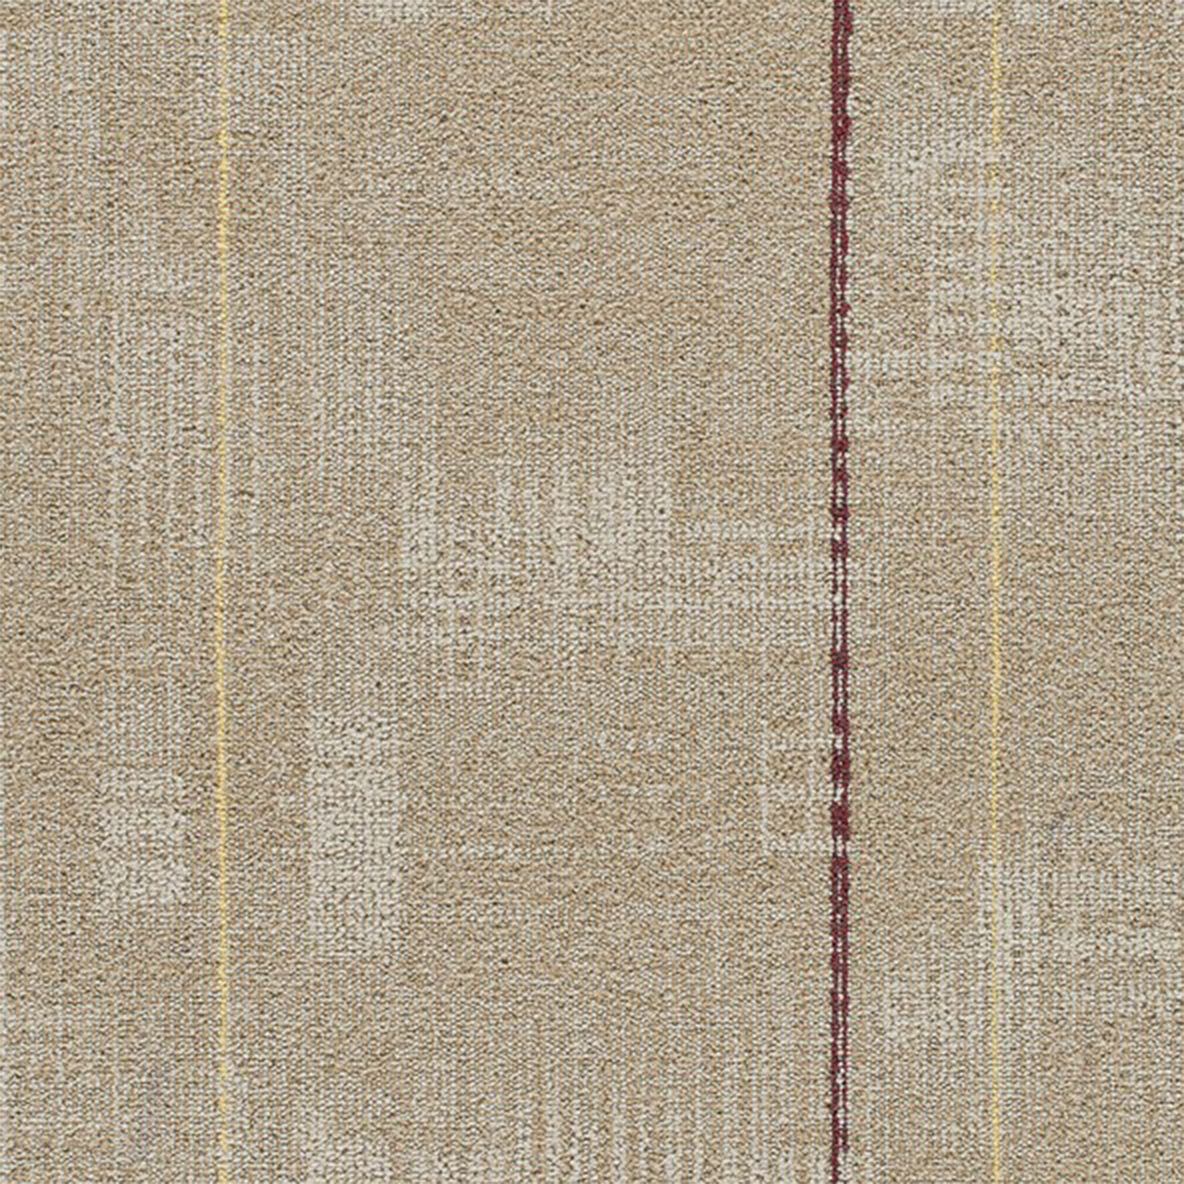 Make Sense Commercial Carpet Tiles .31 Inch x 50x50 cm per Tile Canvas color close up